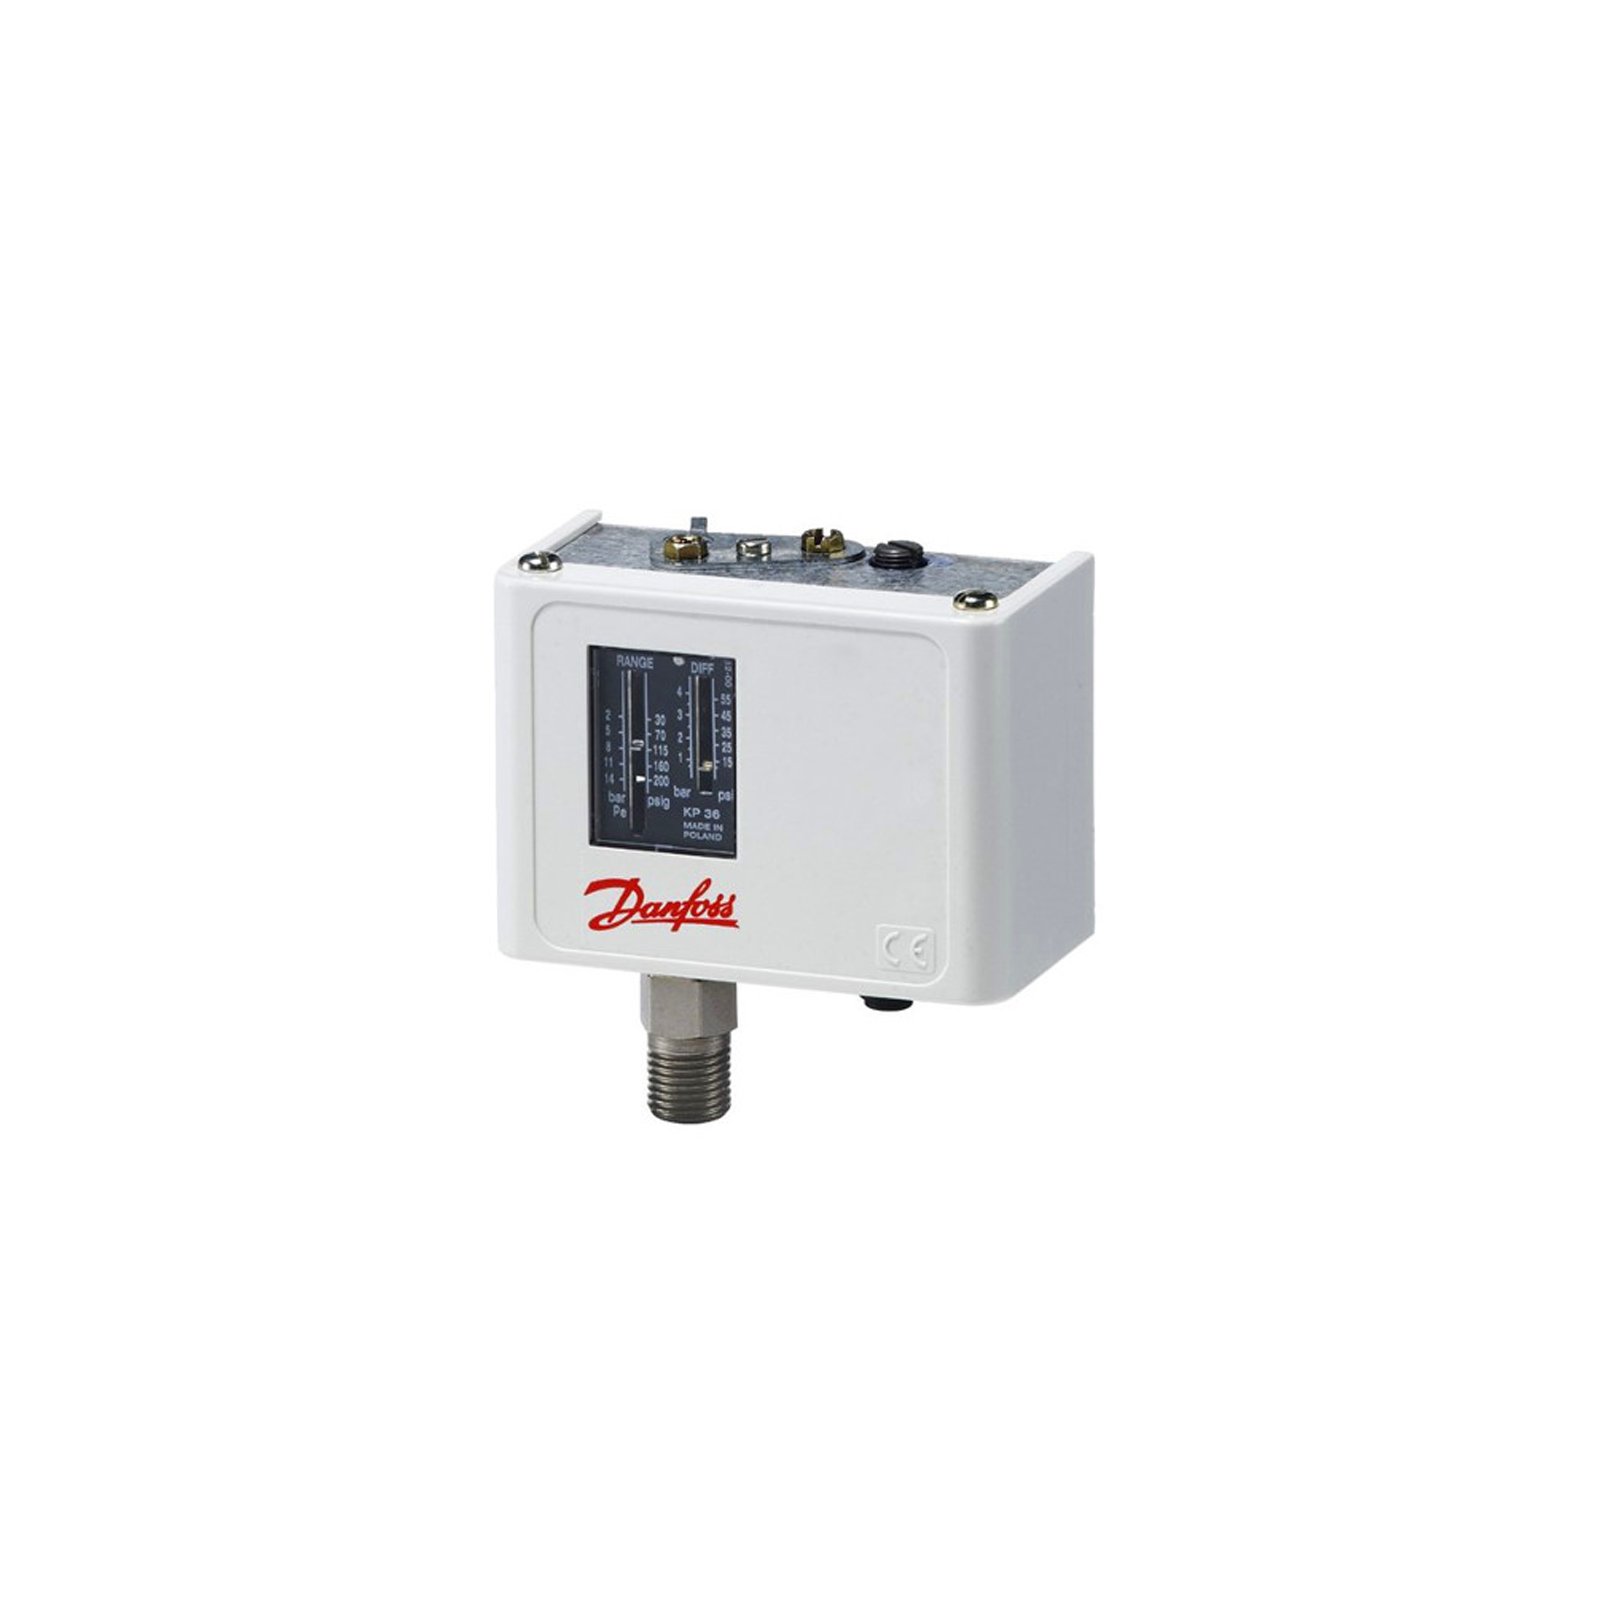 Pressure switch Danfoss high pressure, KP7B 060-119166